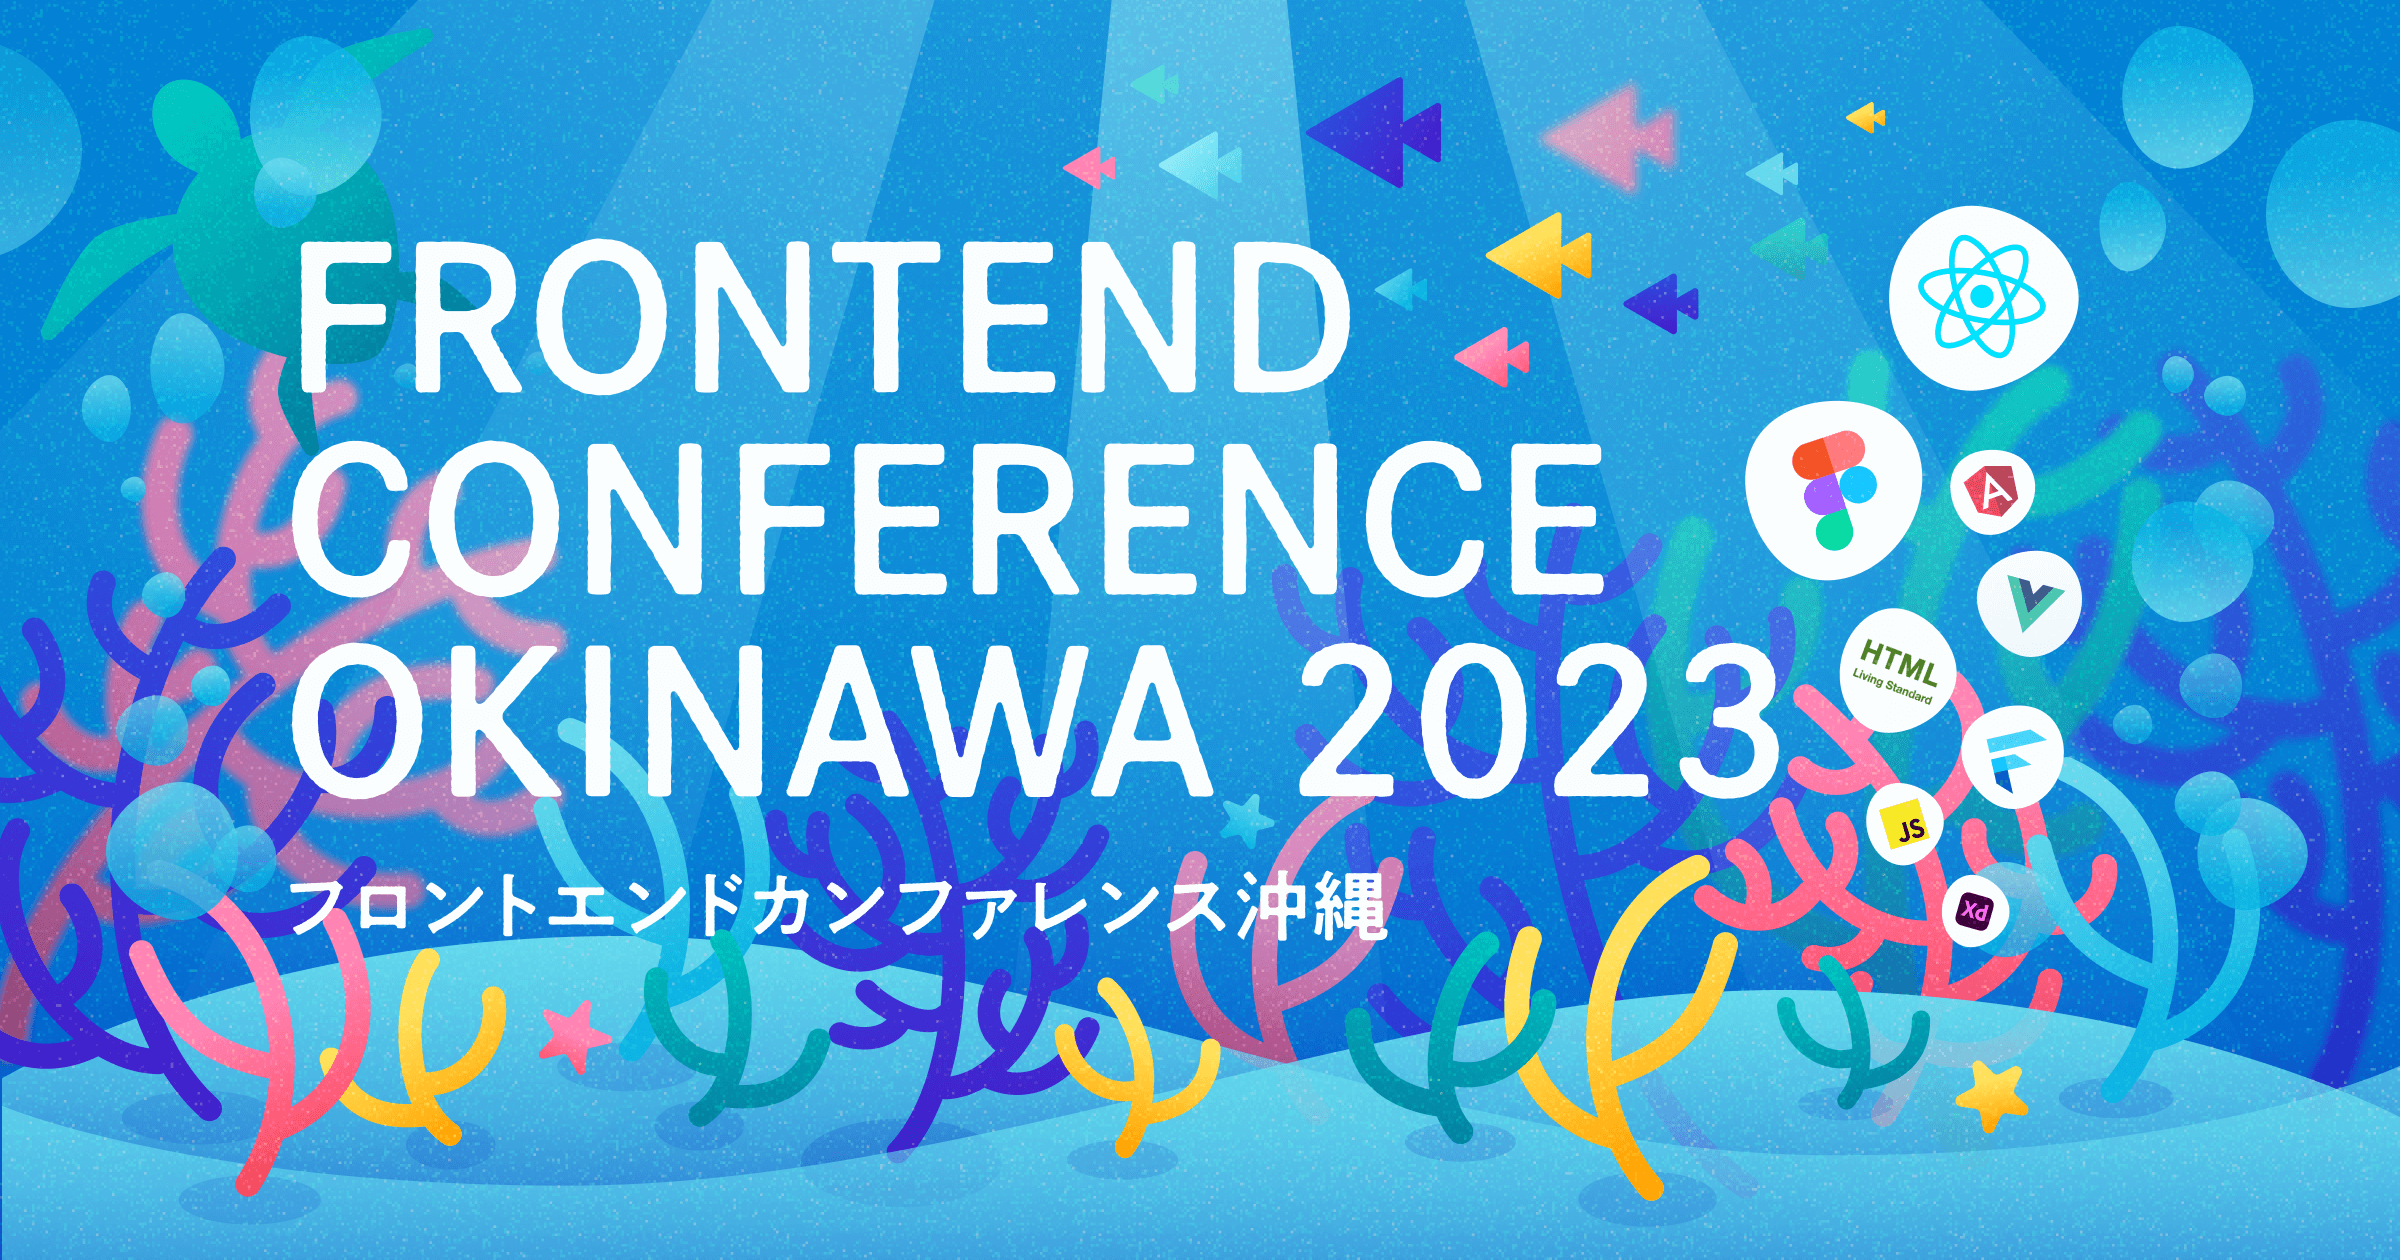 フロントエンドカンファレンス沖縄 2023のキービジュアル